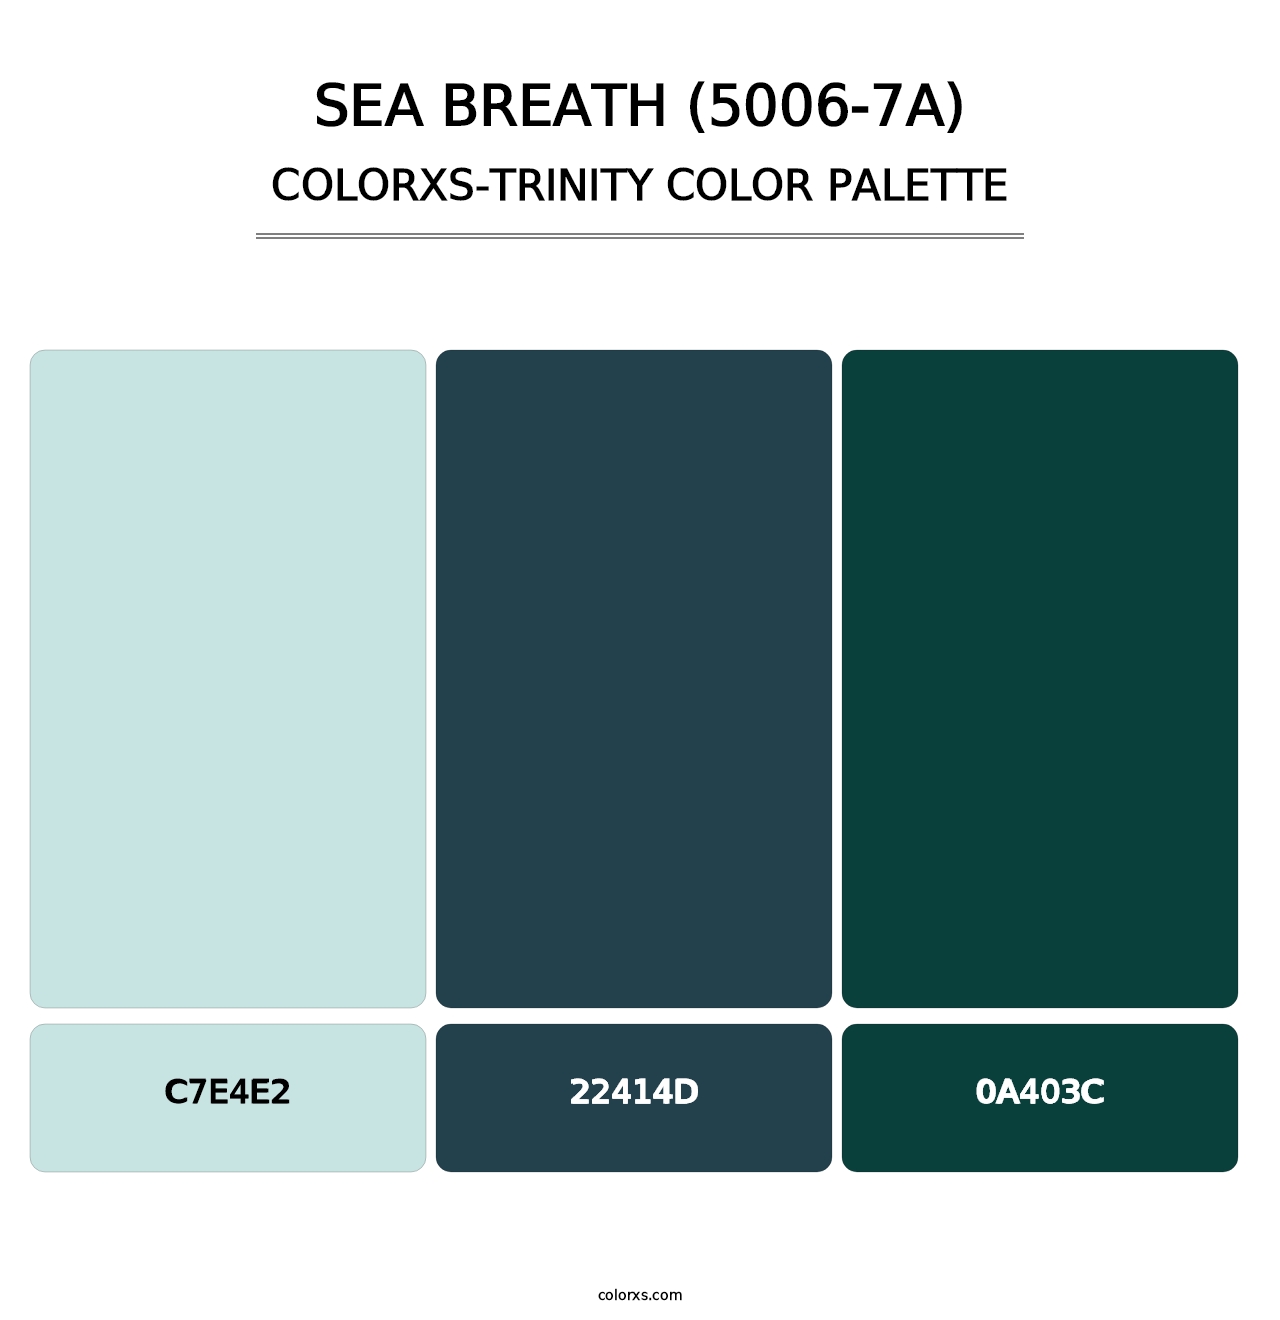 Sea Breath (5006-7A) - Colorxs Trinity Palette